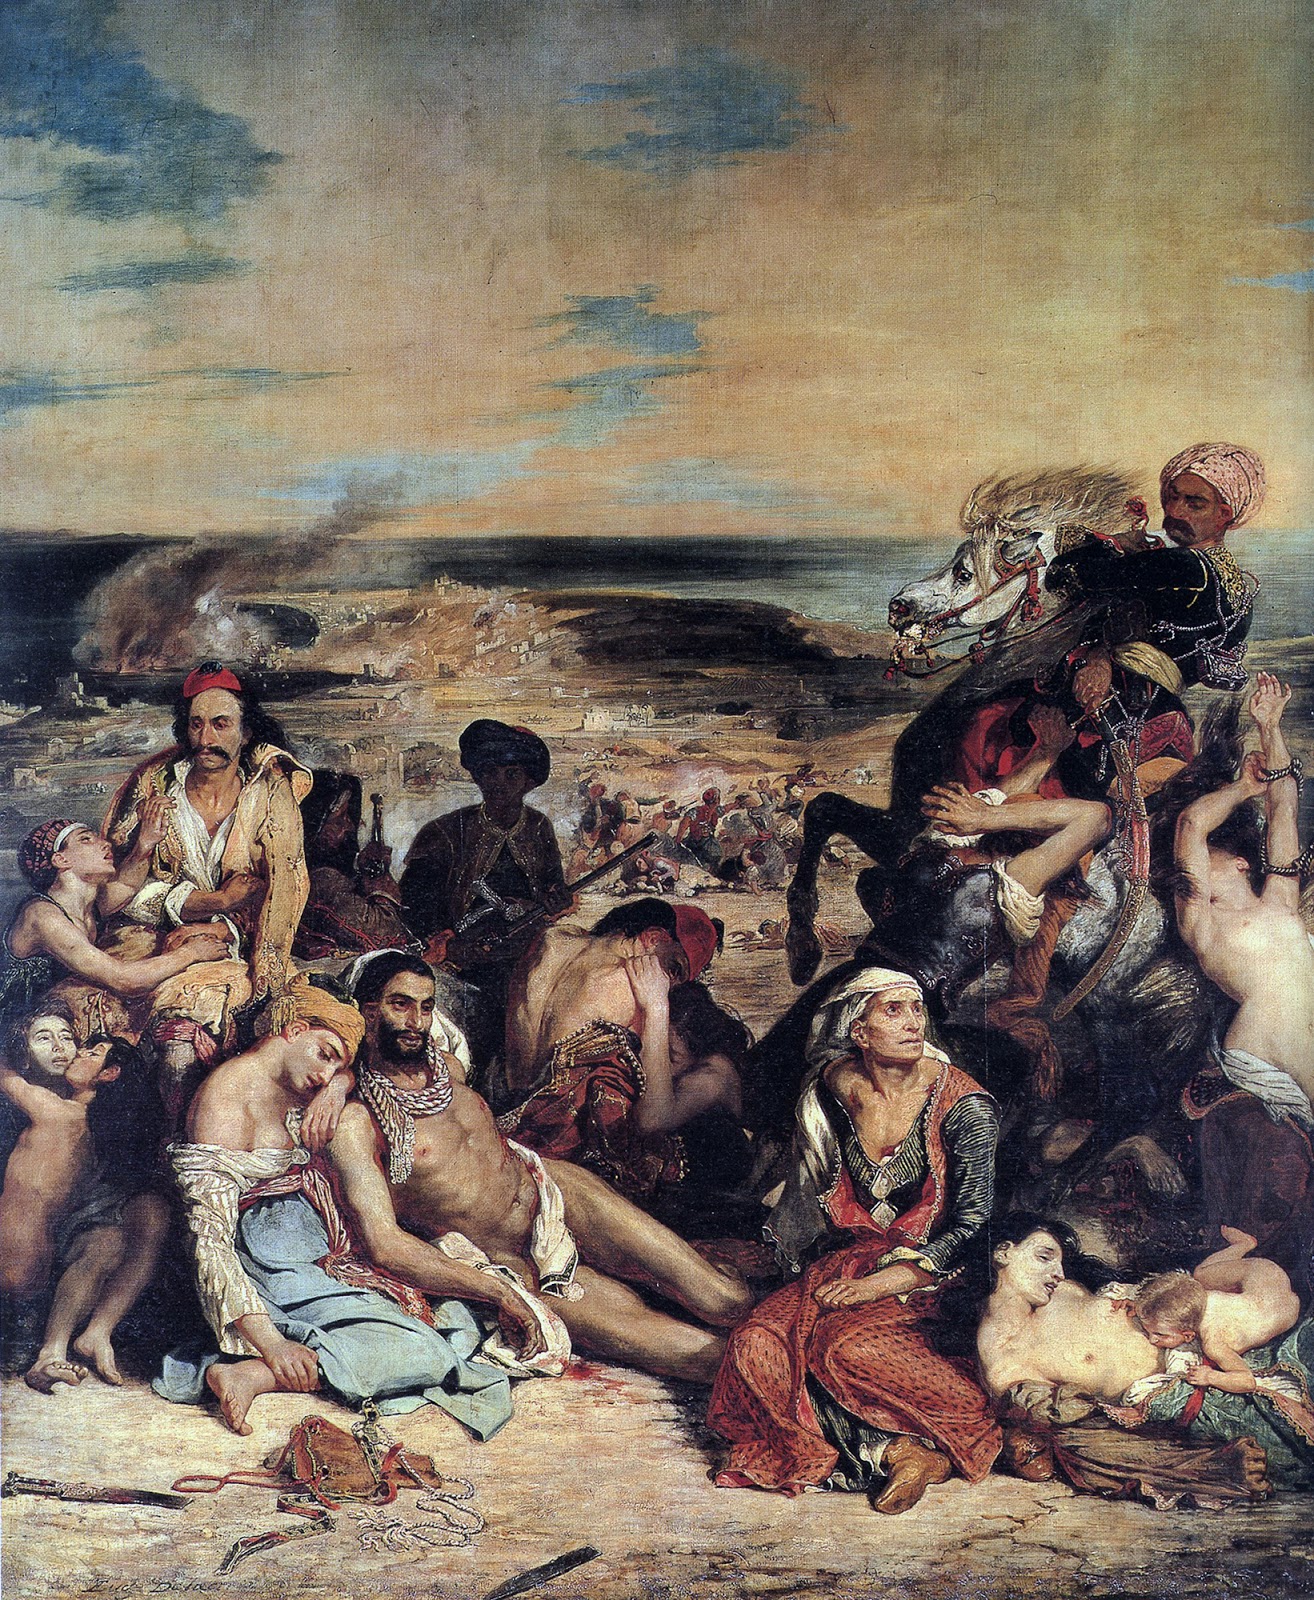 Eugene+Delacroix-1798-1863 (172).jpg